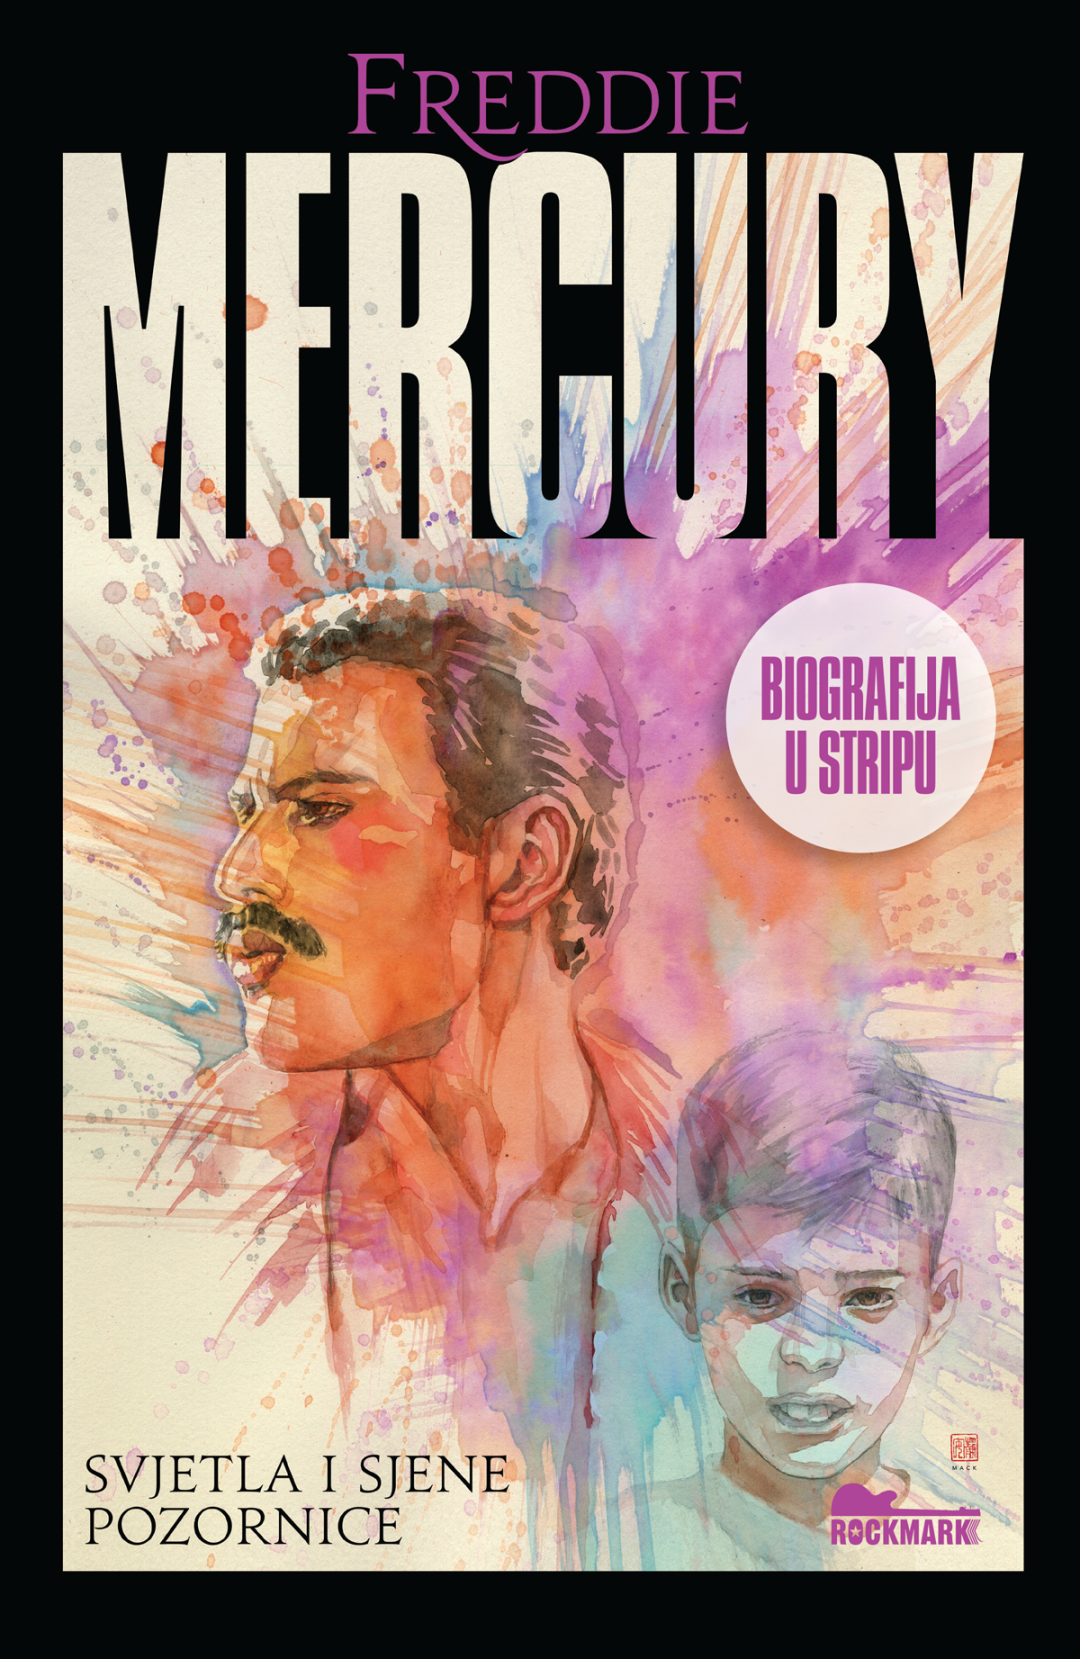 Freddie Mercury strip